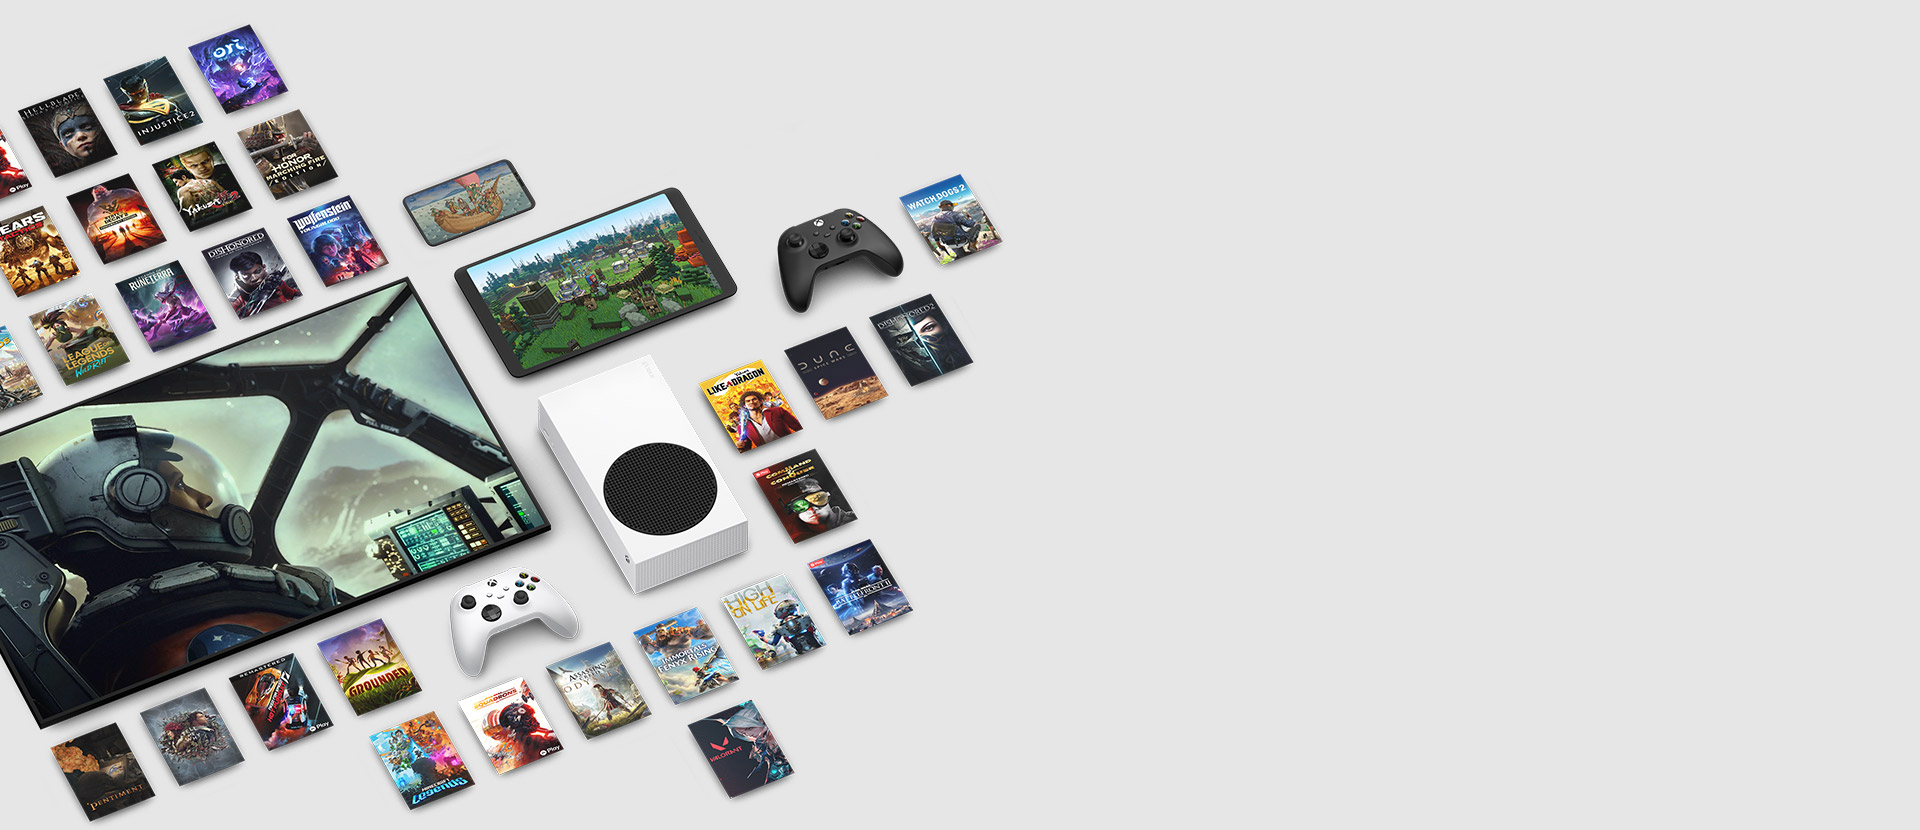 Γραφικά παιχνιδιών από πολλά παιχνίδια που είναι διαθέσιμα τώρα με το Xbox Game Pass Ultimate γύρω από πολλές συσκευές, όπως κονσόλα, κινητό τηλέφωνο, tablet, έξυπνες τηλεοράσεις και χειριστήρια.